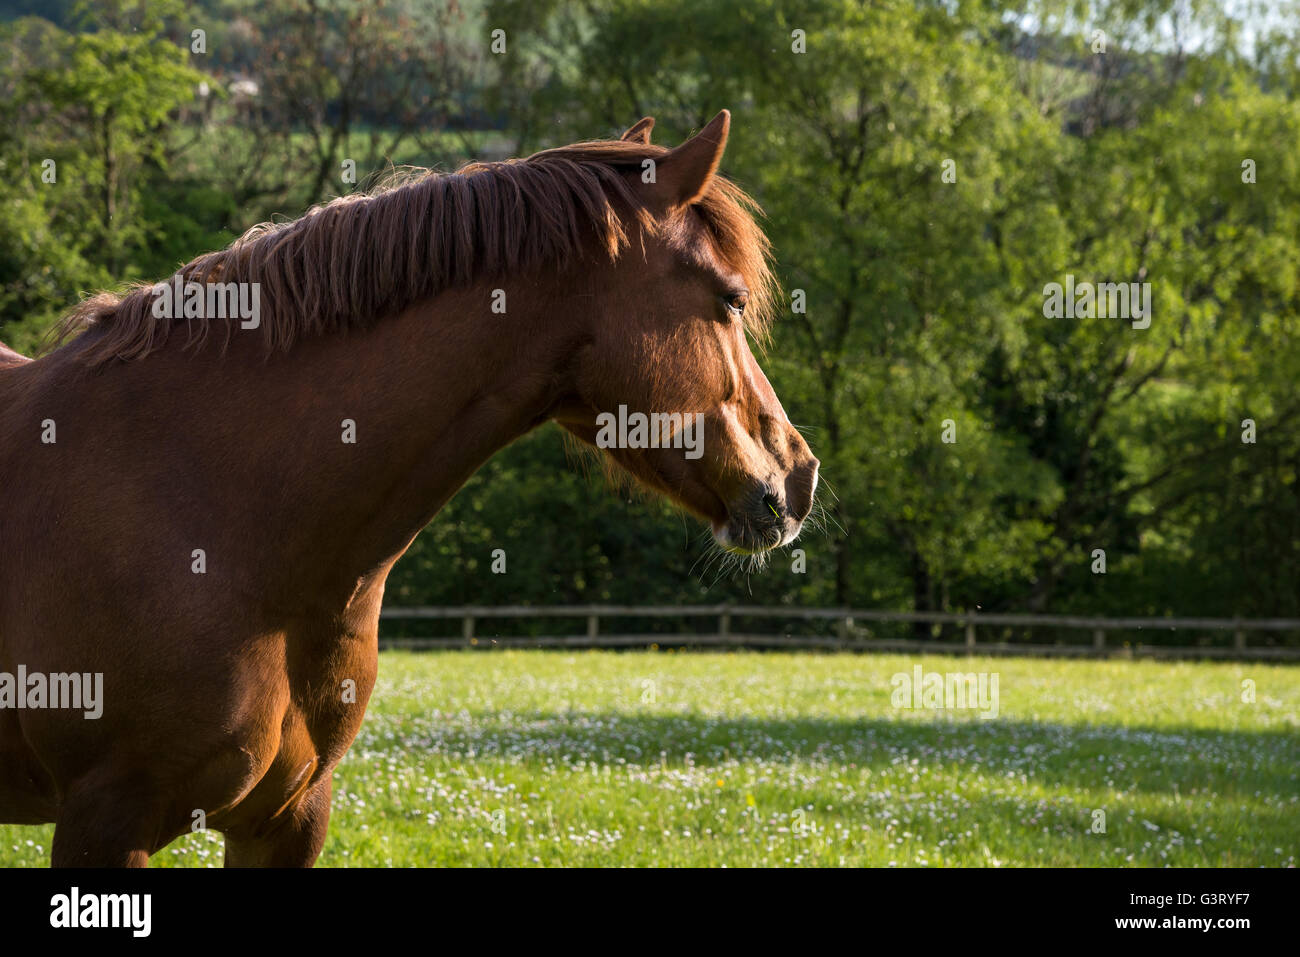 Castaña de caballo con la cabeza hacia arriba y las orejas hacia adelante en un paisaje veraniego. Foto de stock